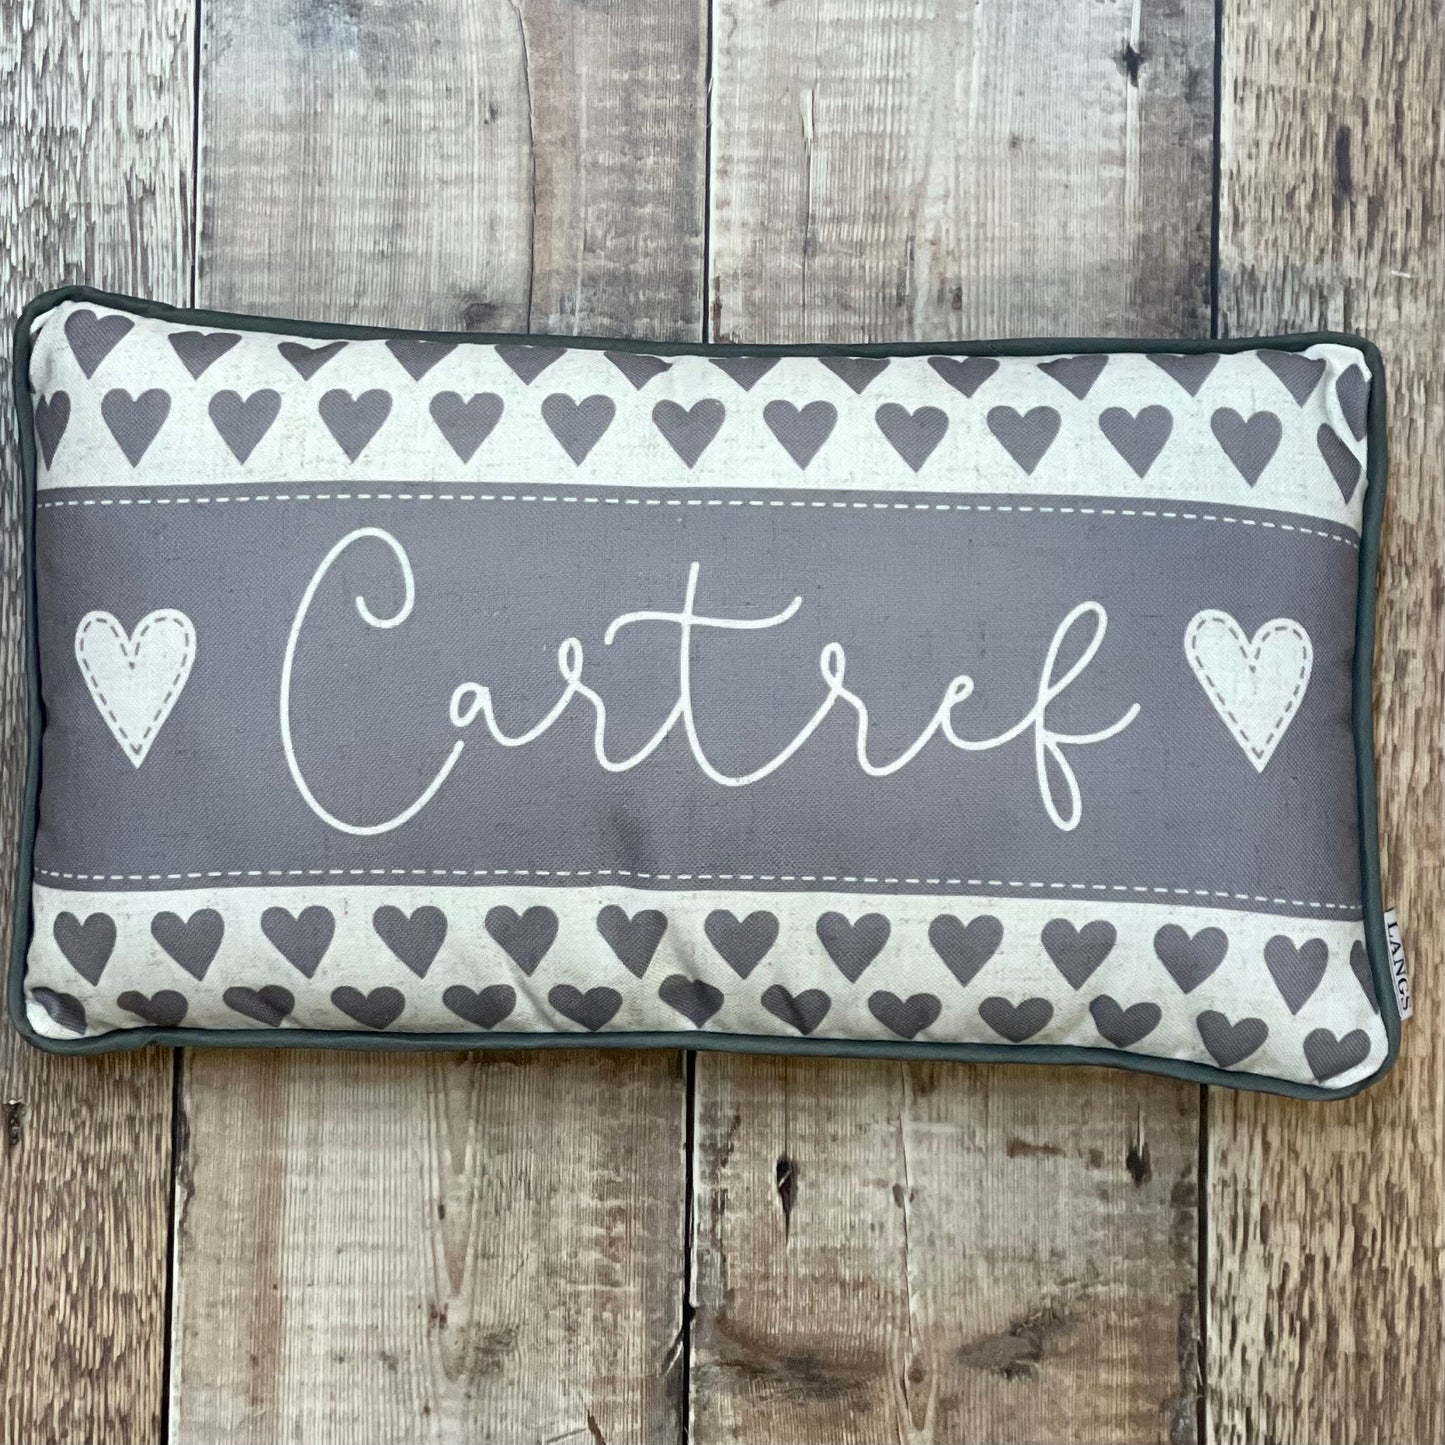 Cartref Hearts Welsh Cushion